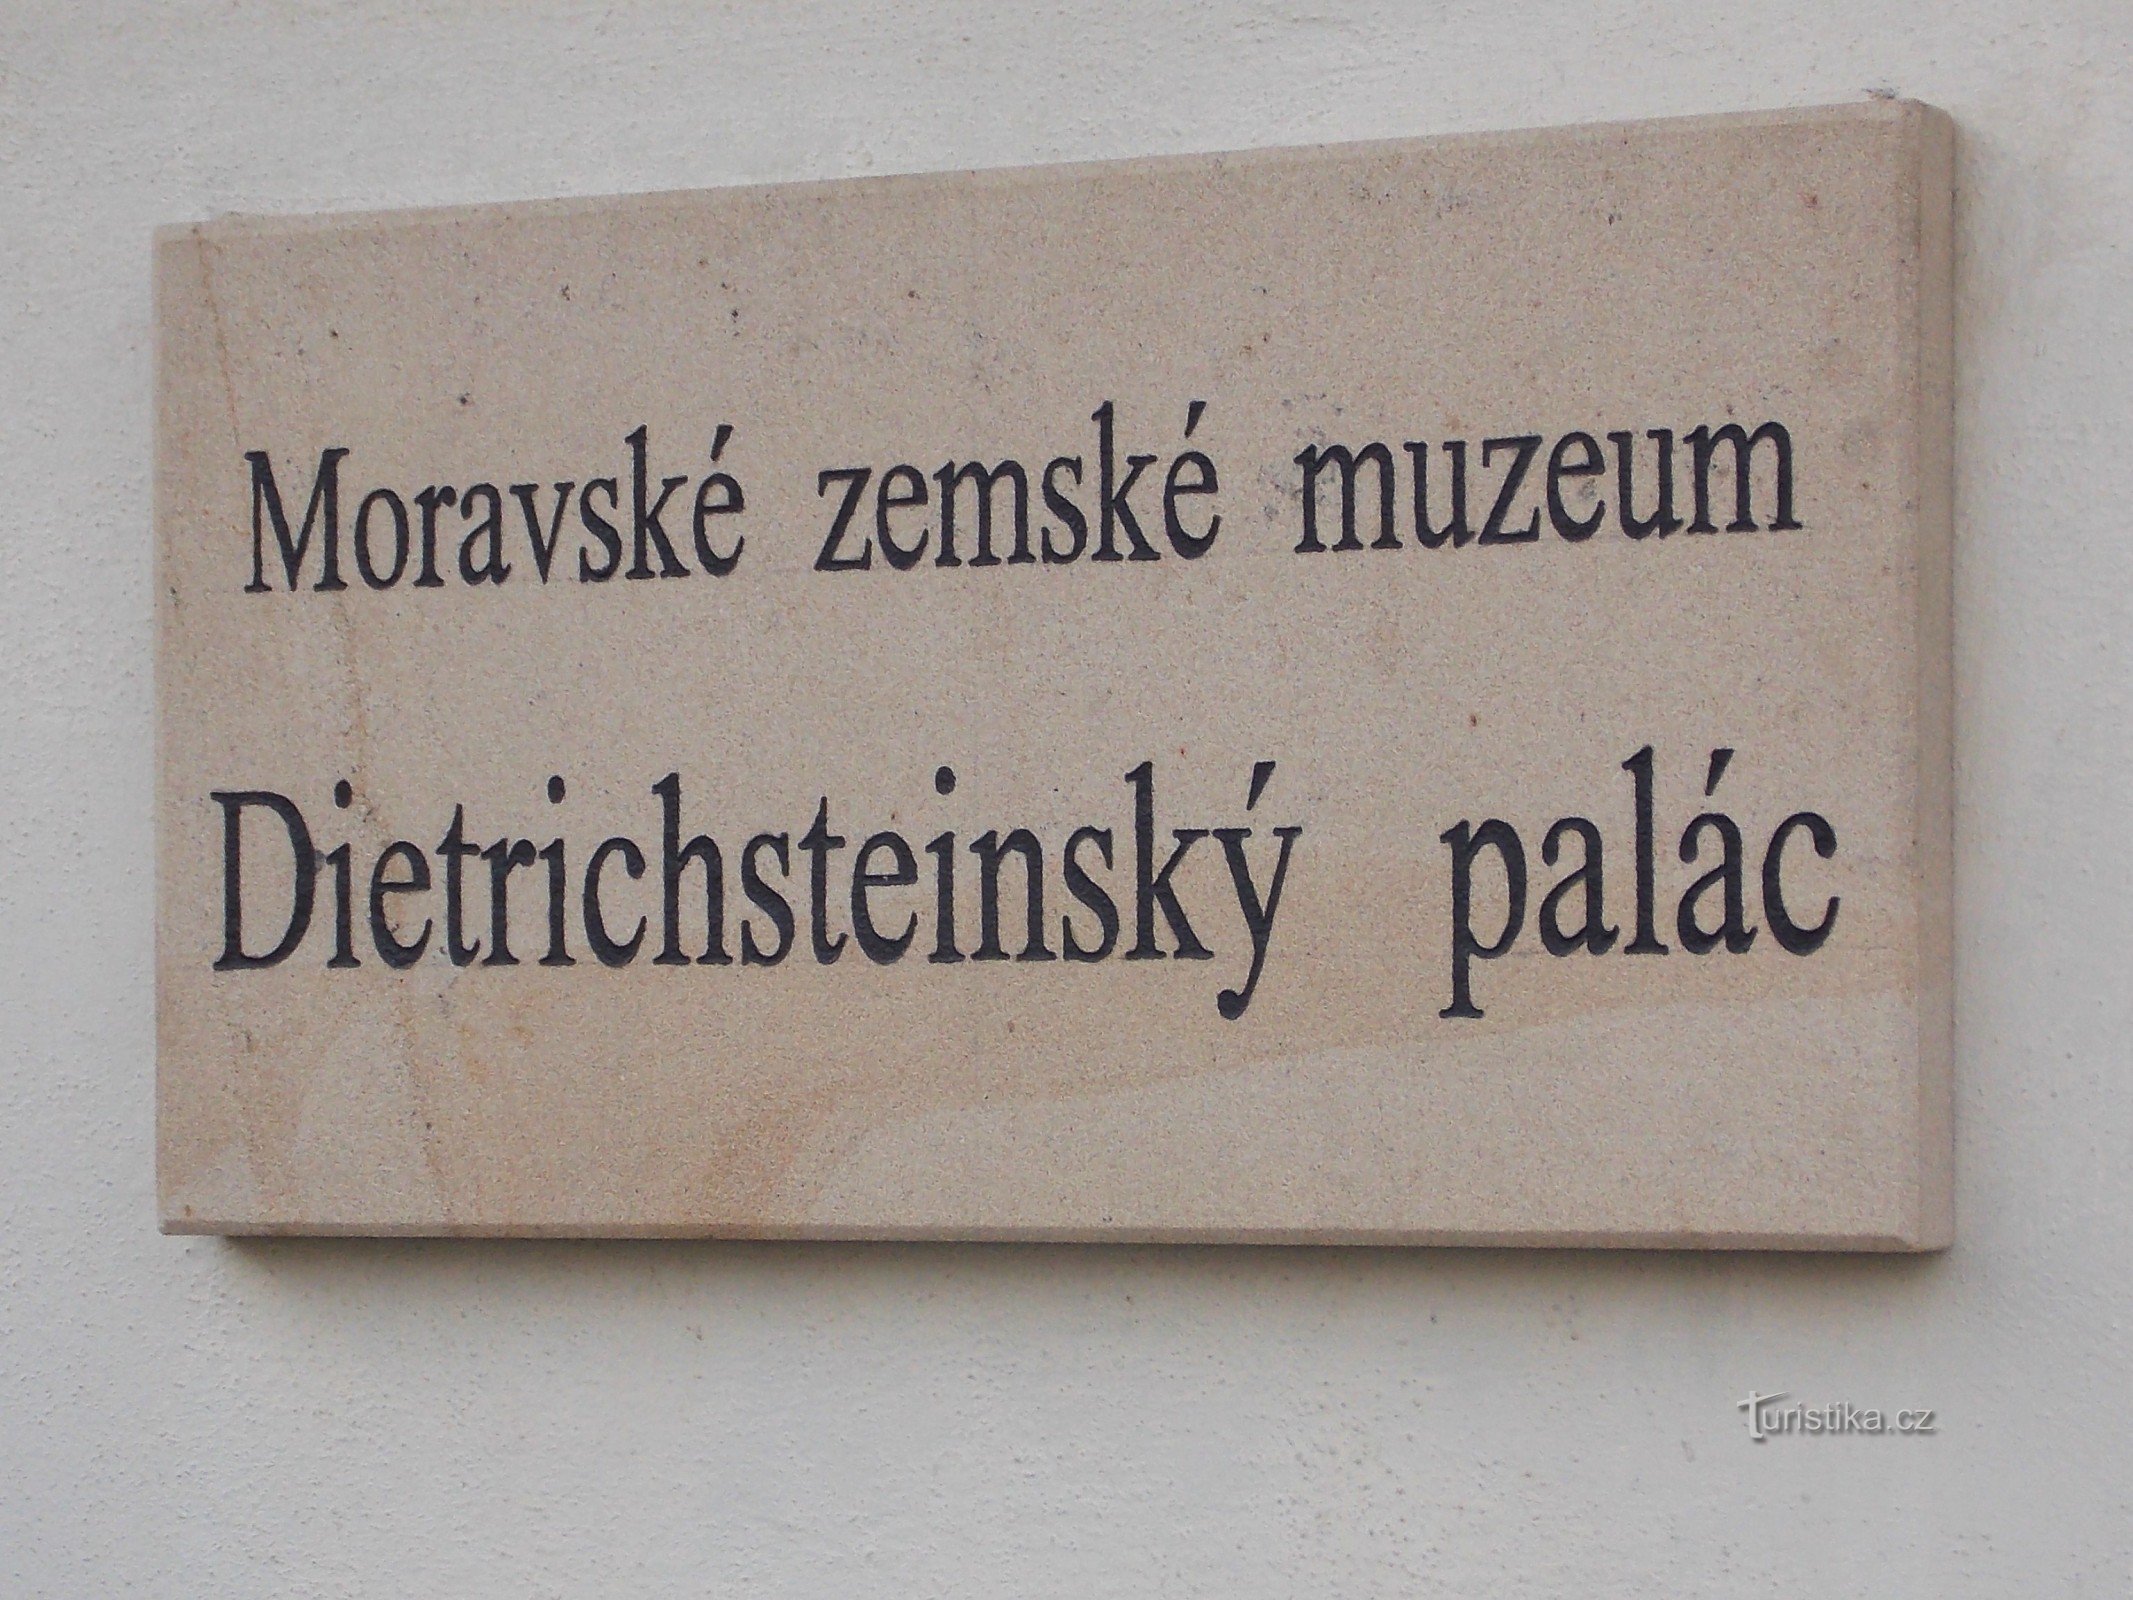 Επαρχιακό Μουσείο Μοραβίας στο Μπρνο - Παλάτι Dietrichstein